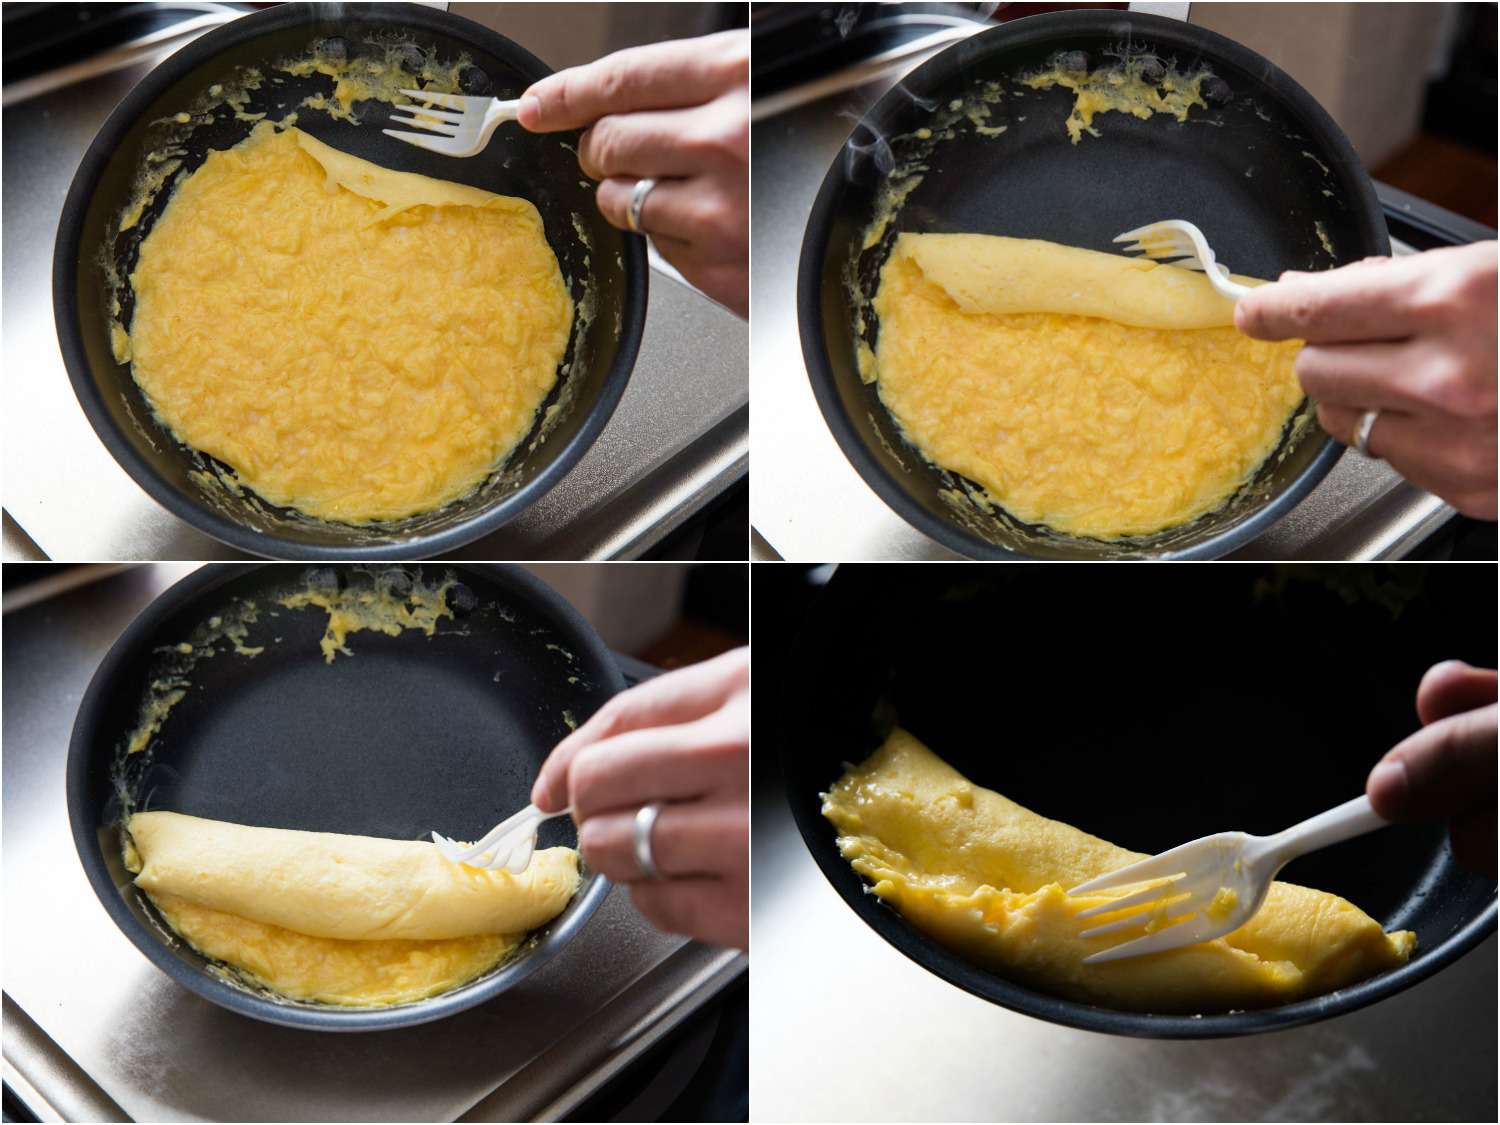 在不粘锅里做法式煎蛋卷的拼贴画:用塑料叉子把煎蛋卷的边缘卷起来，形成一个长方形